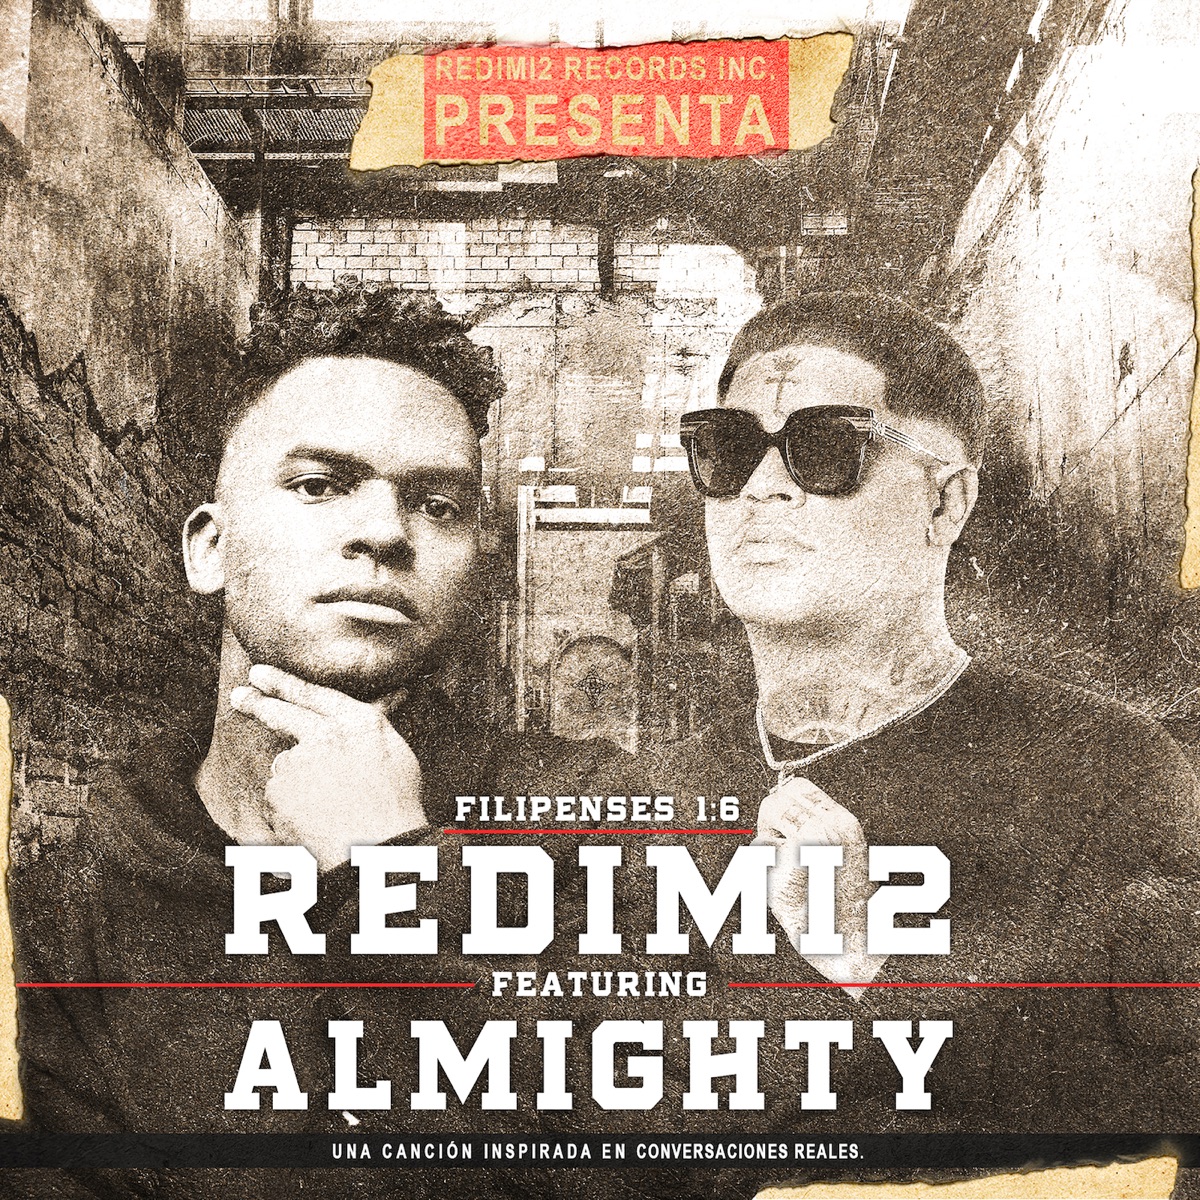 Alegría - Single de Redimi2 en Apple Music